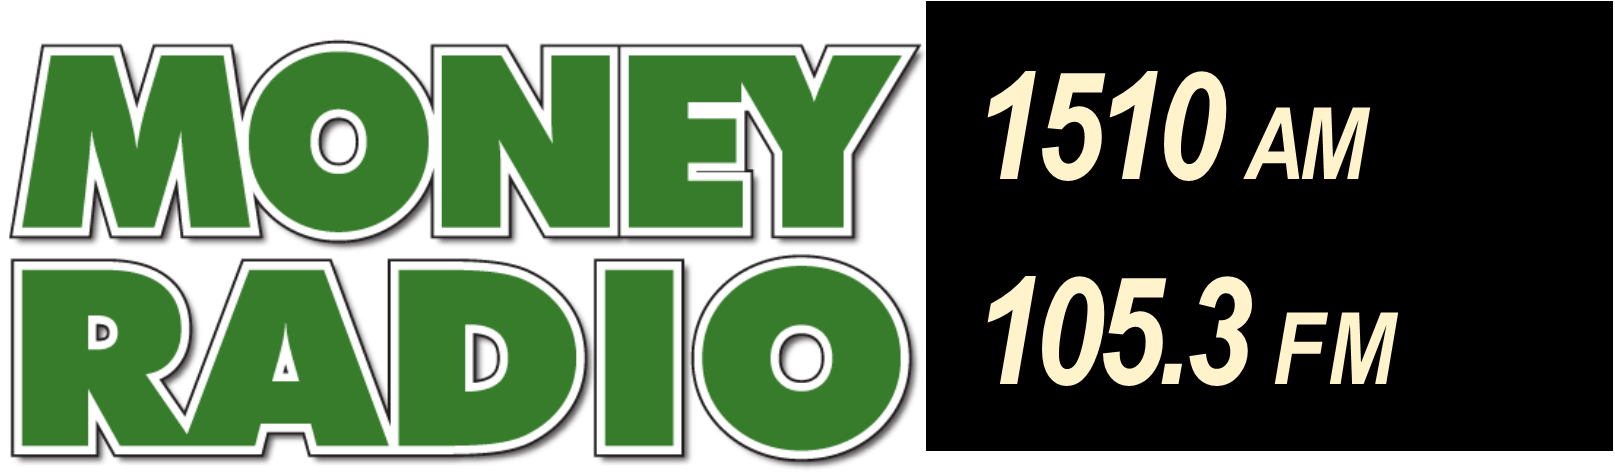 Money Radio 1510 Phoenix Arizona